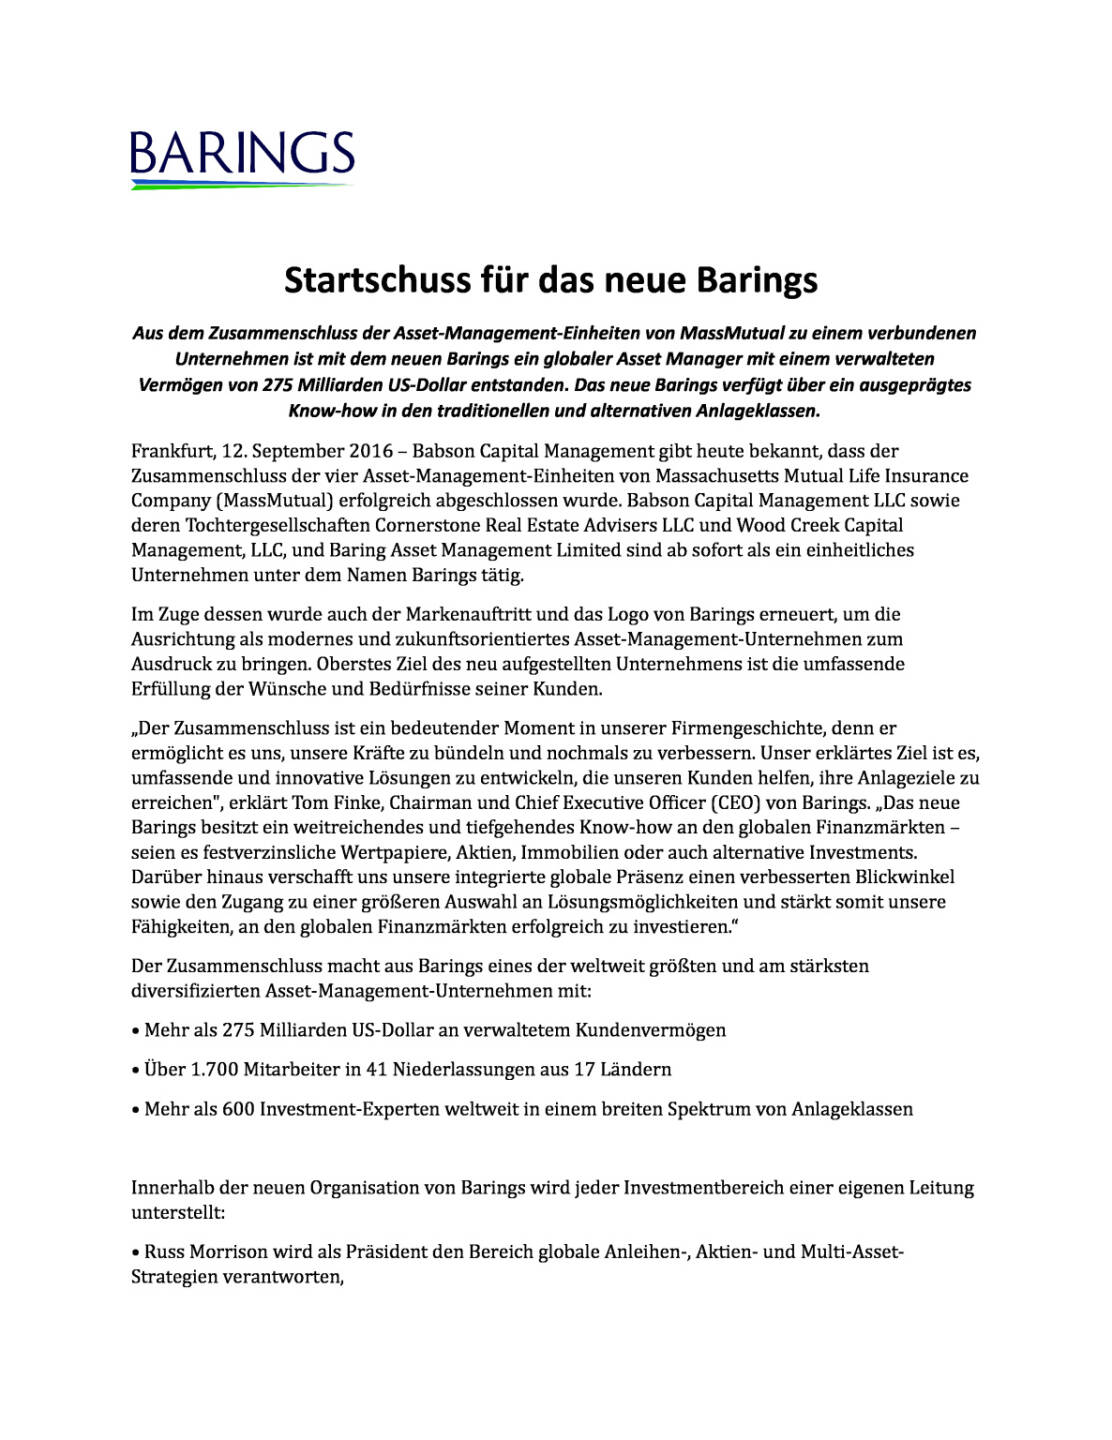 Startschuss für das neue Barings, Seite 1/3, komplettes Dokument unter http://boerse-social.com/static/uploads/file_1759_startschuss_fur_das_neue_barings.pdf